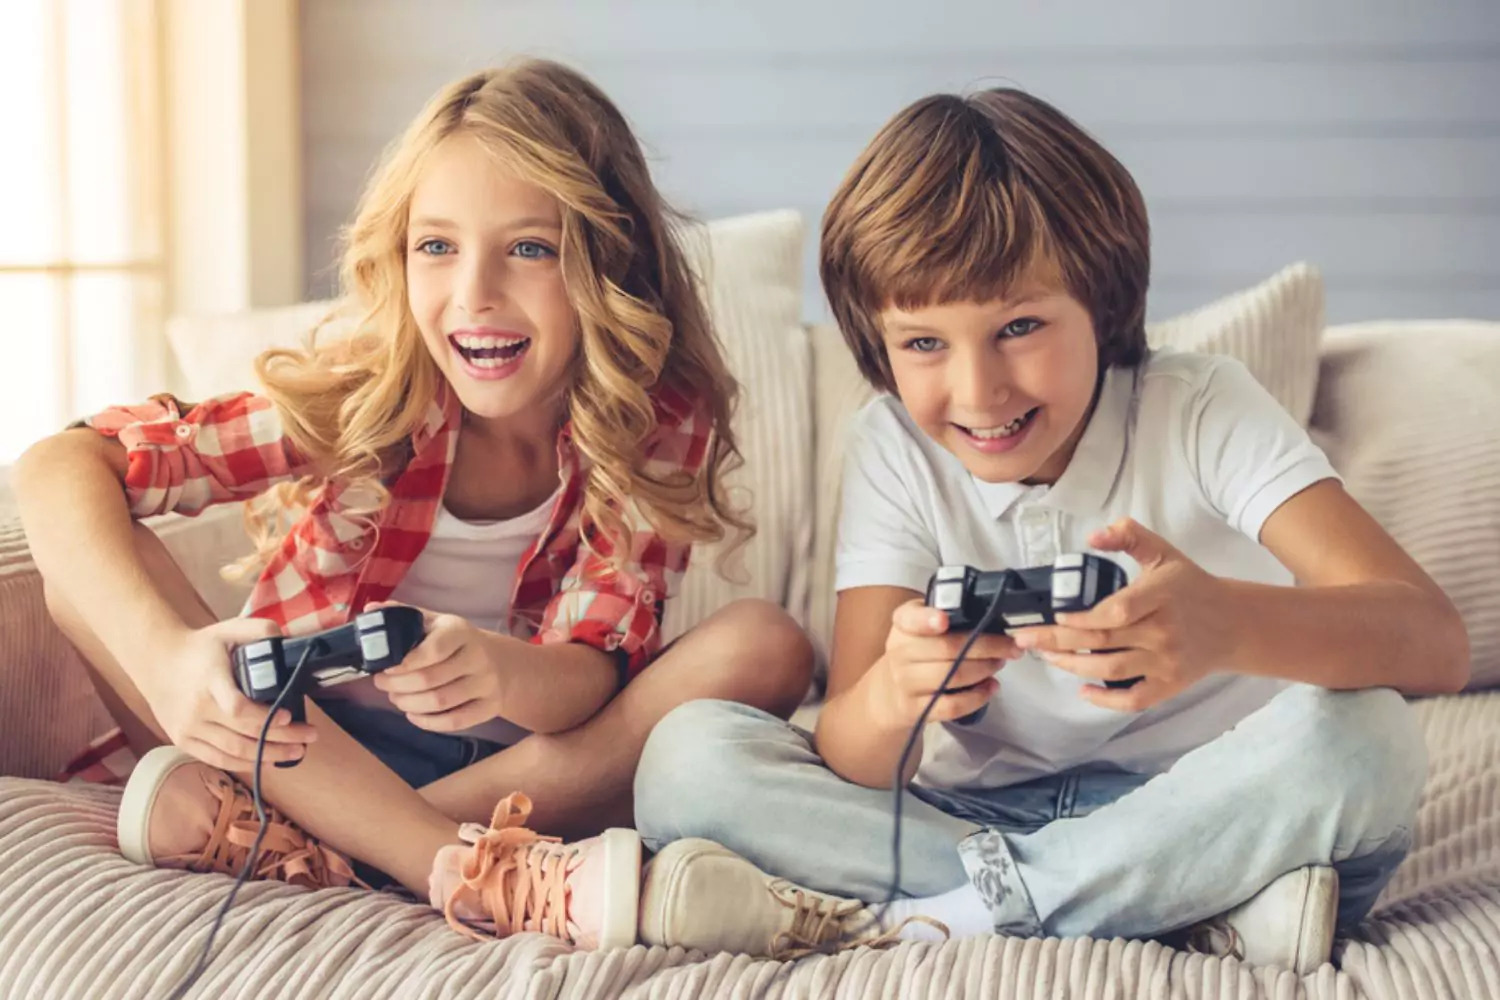 Исследование показало, что почти половина геймеров играют в видеоигры, чтобы выразить себя